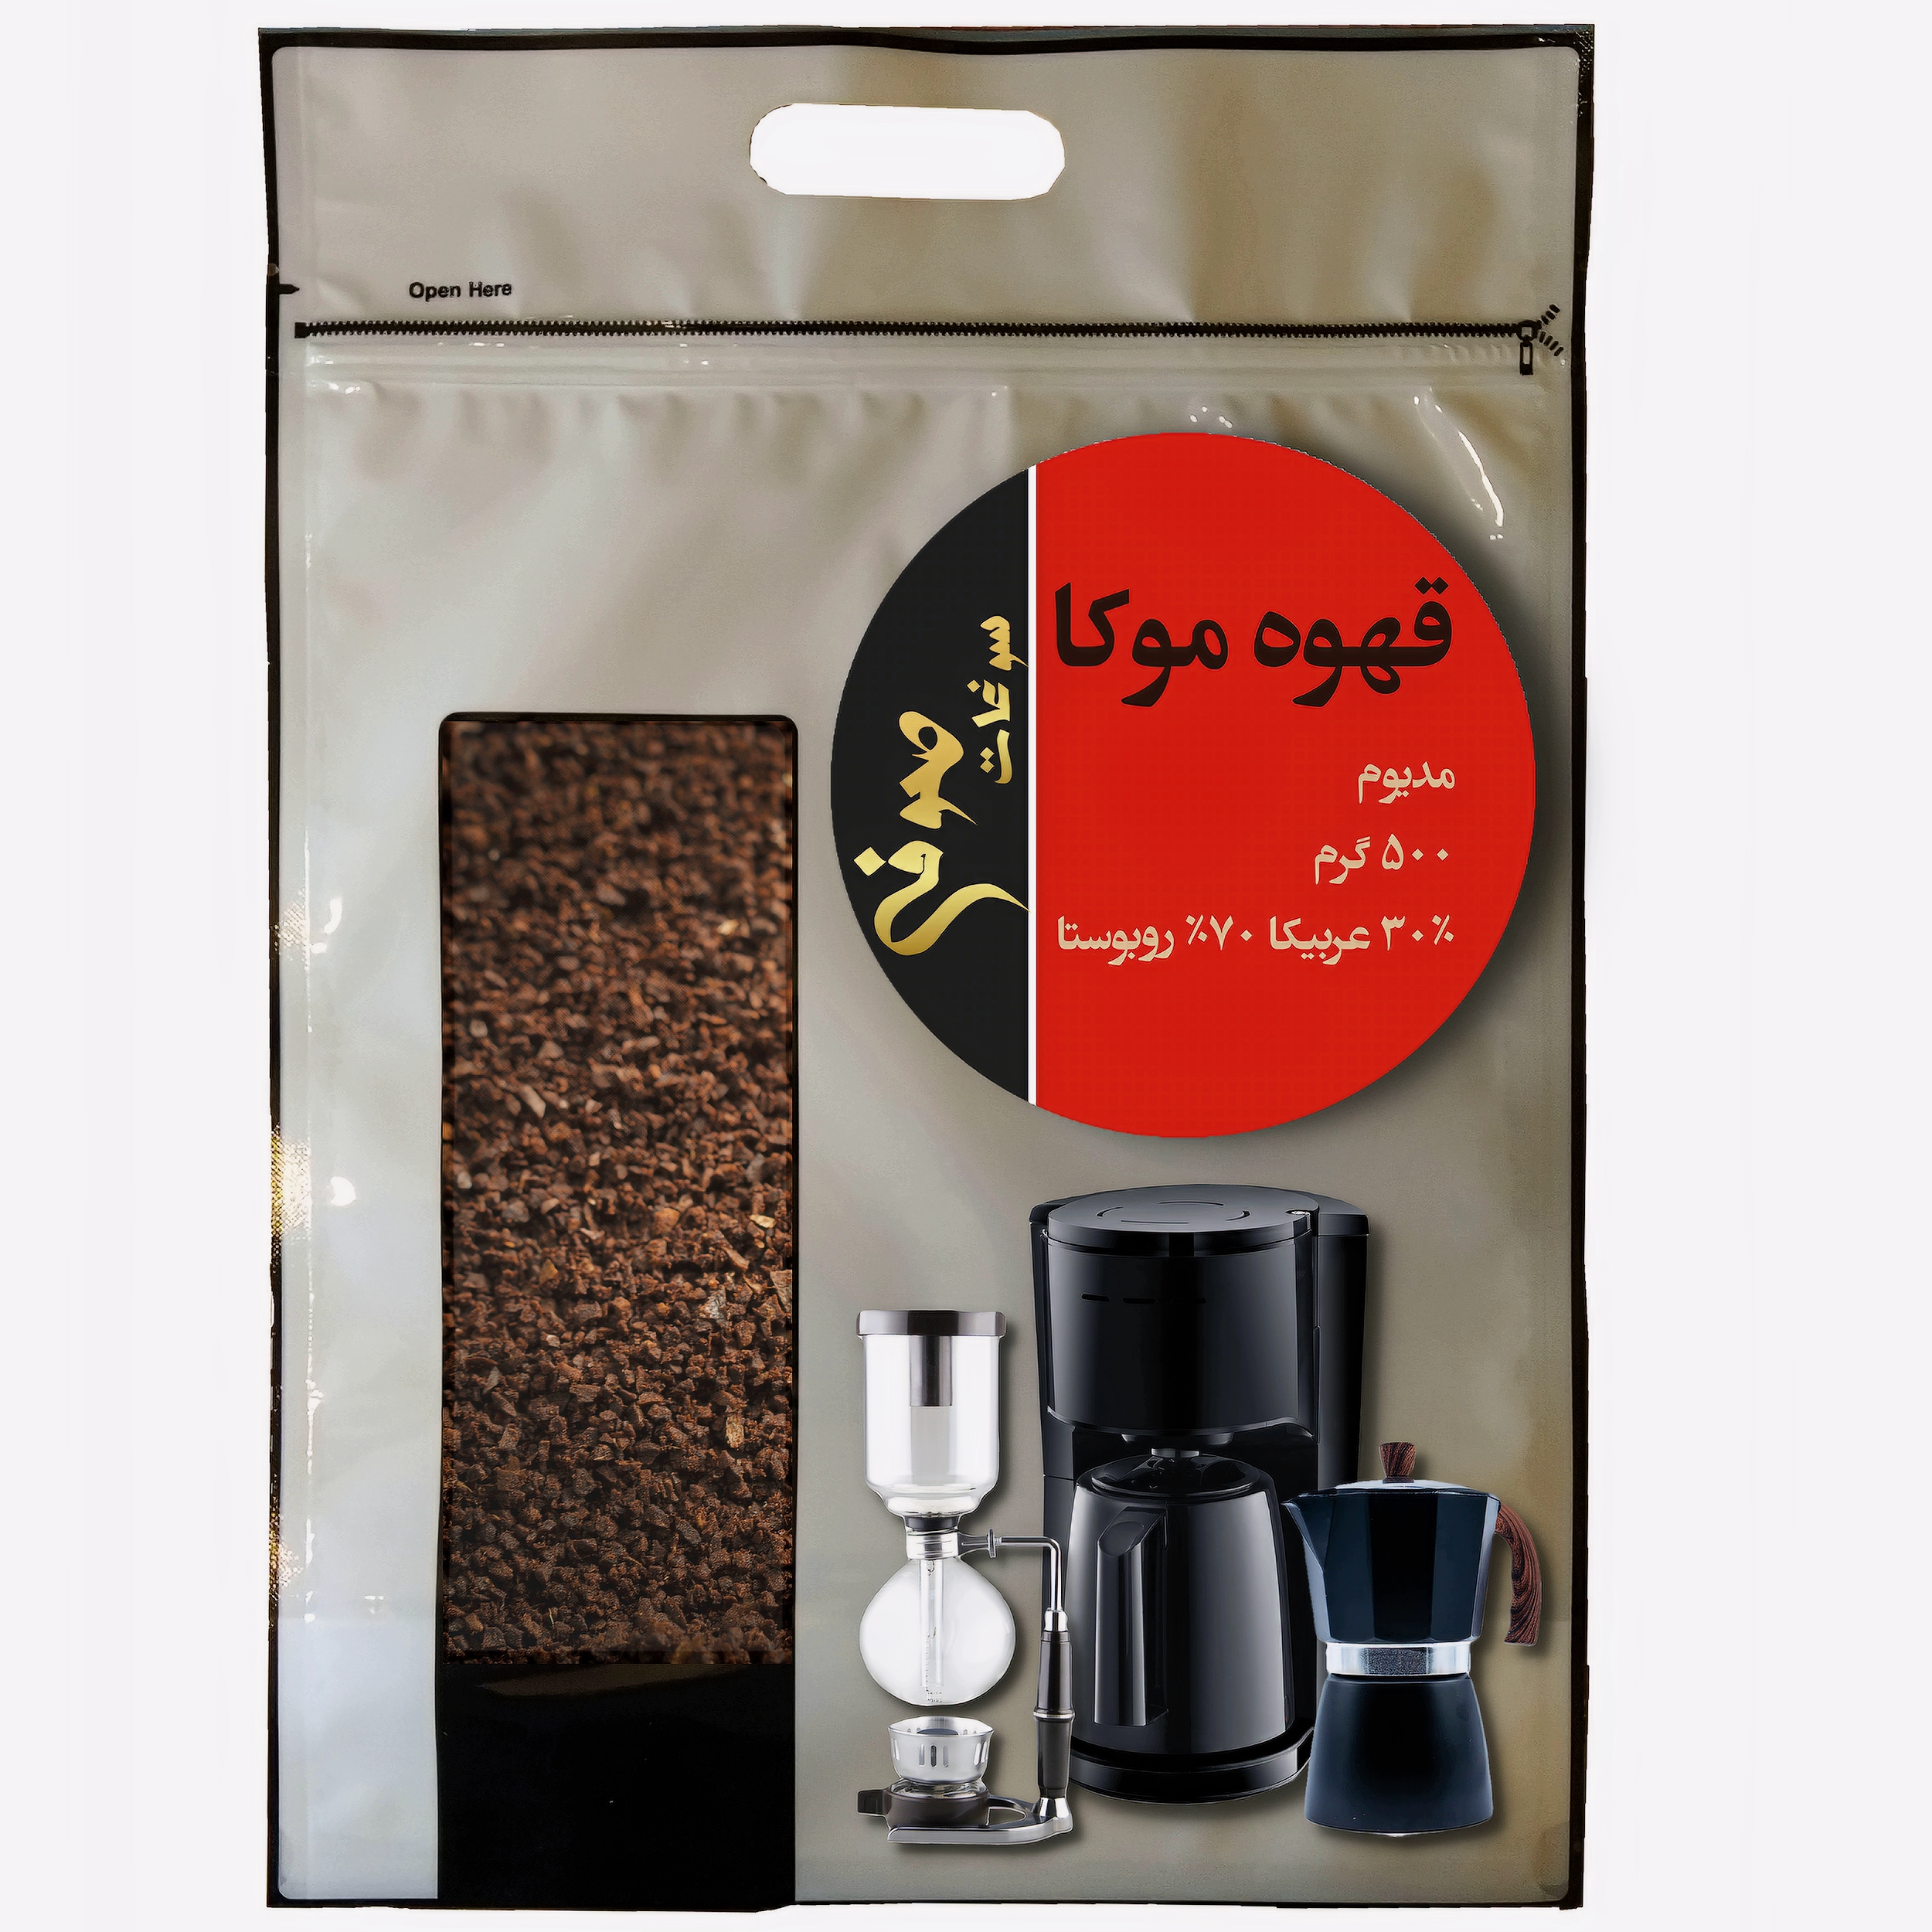 پودر قهوه موکا مدیوم 30 درصد عربیکا 70 درصد روبوستا صوفی - 500 گرم